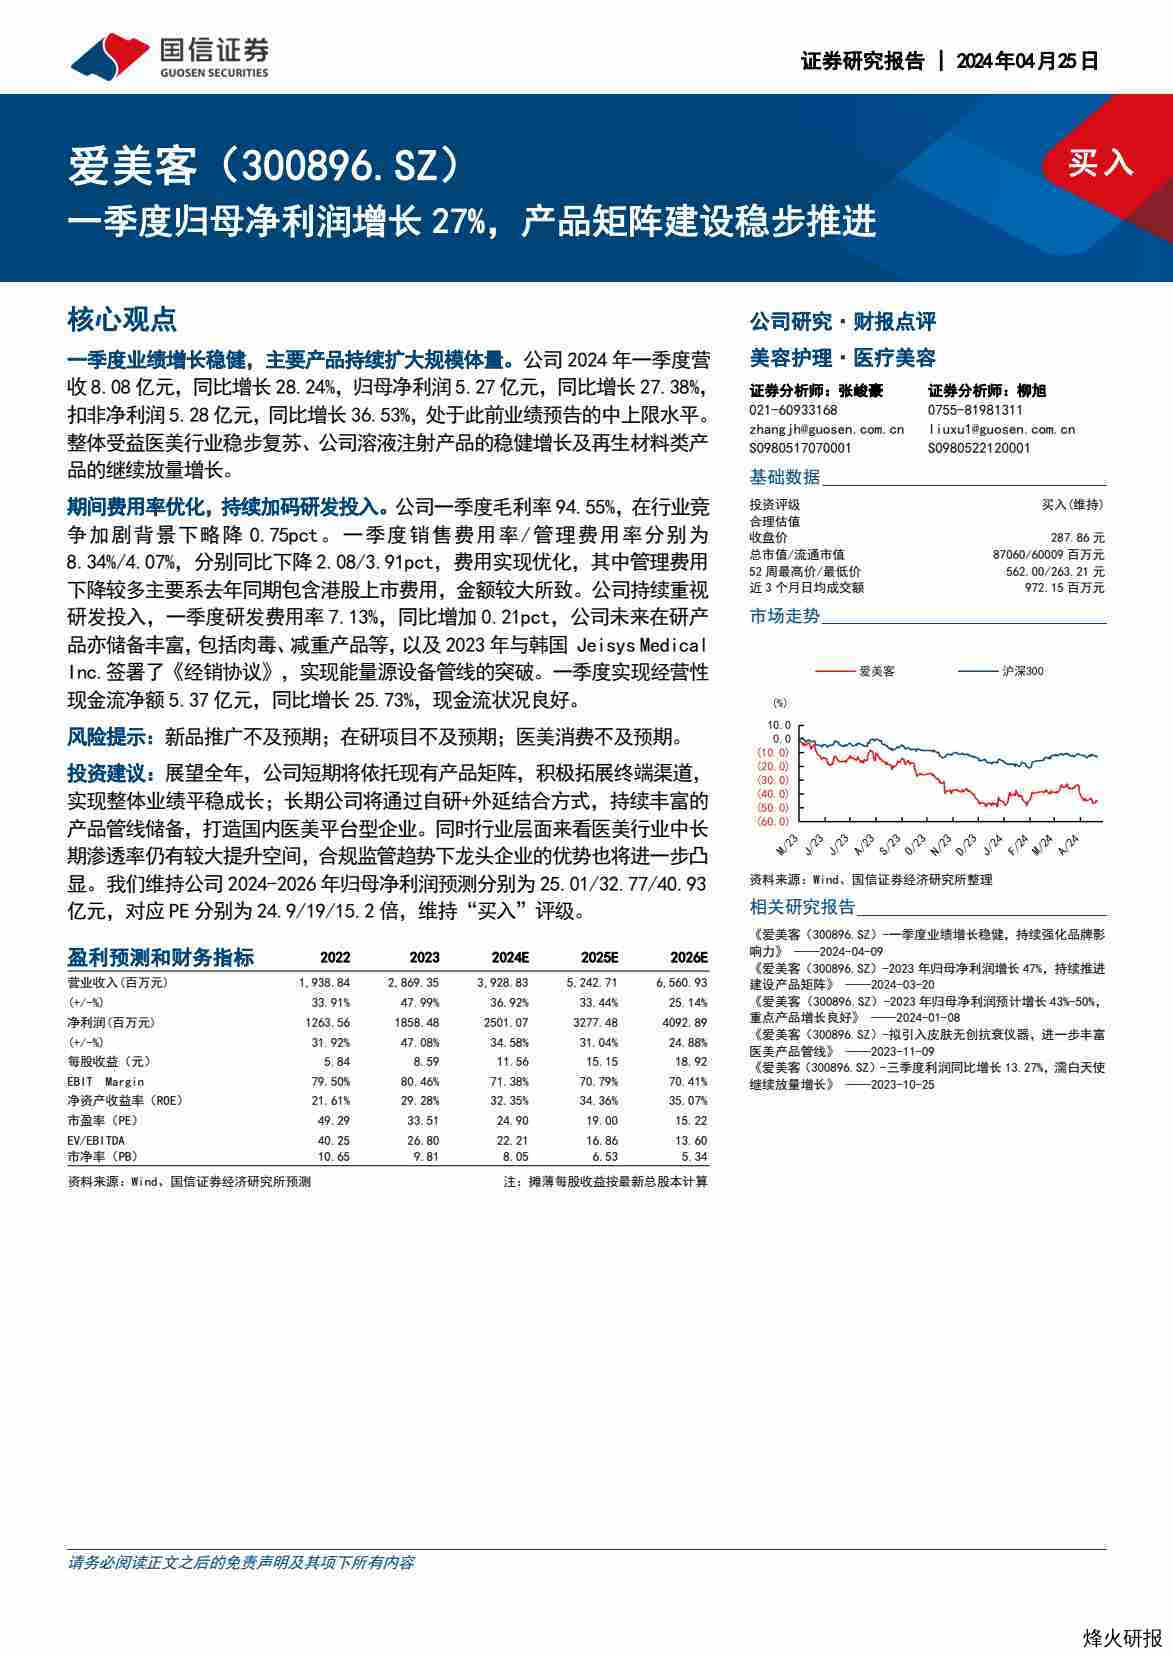 【国信证券】一季度归母净利润增长27%，产品矩阵建设稳步推进.pdf-第一页